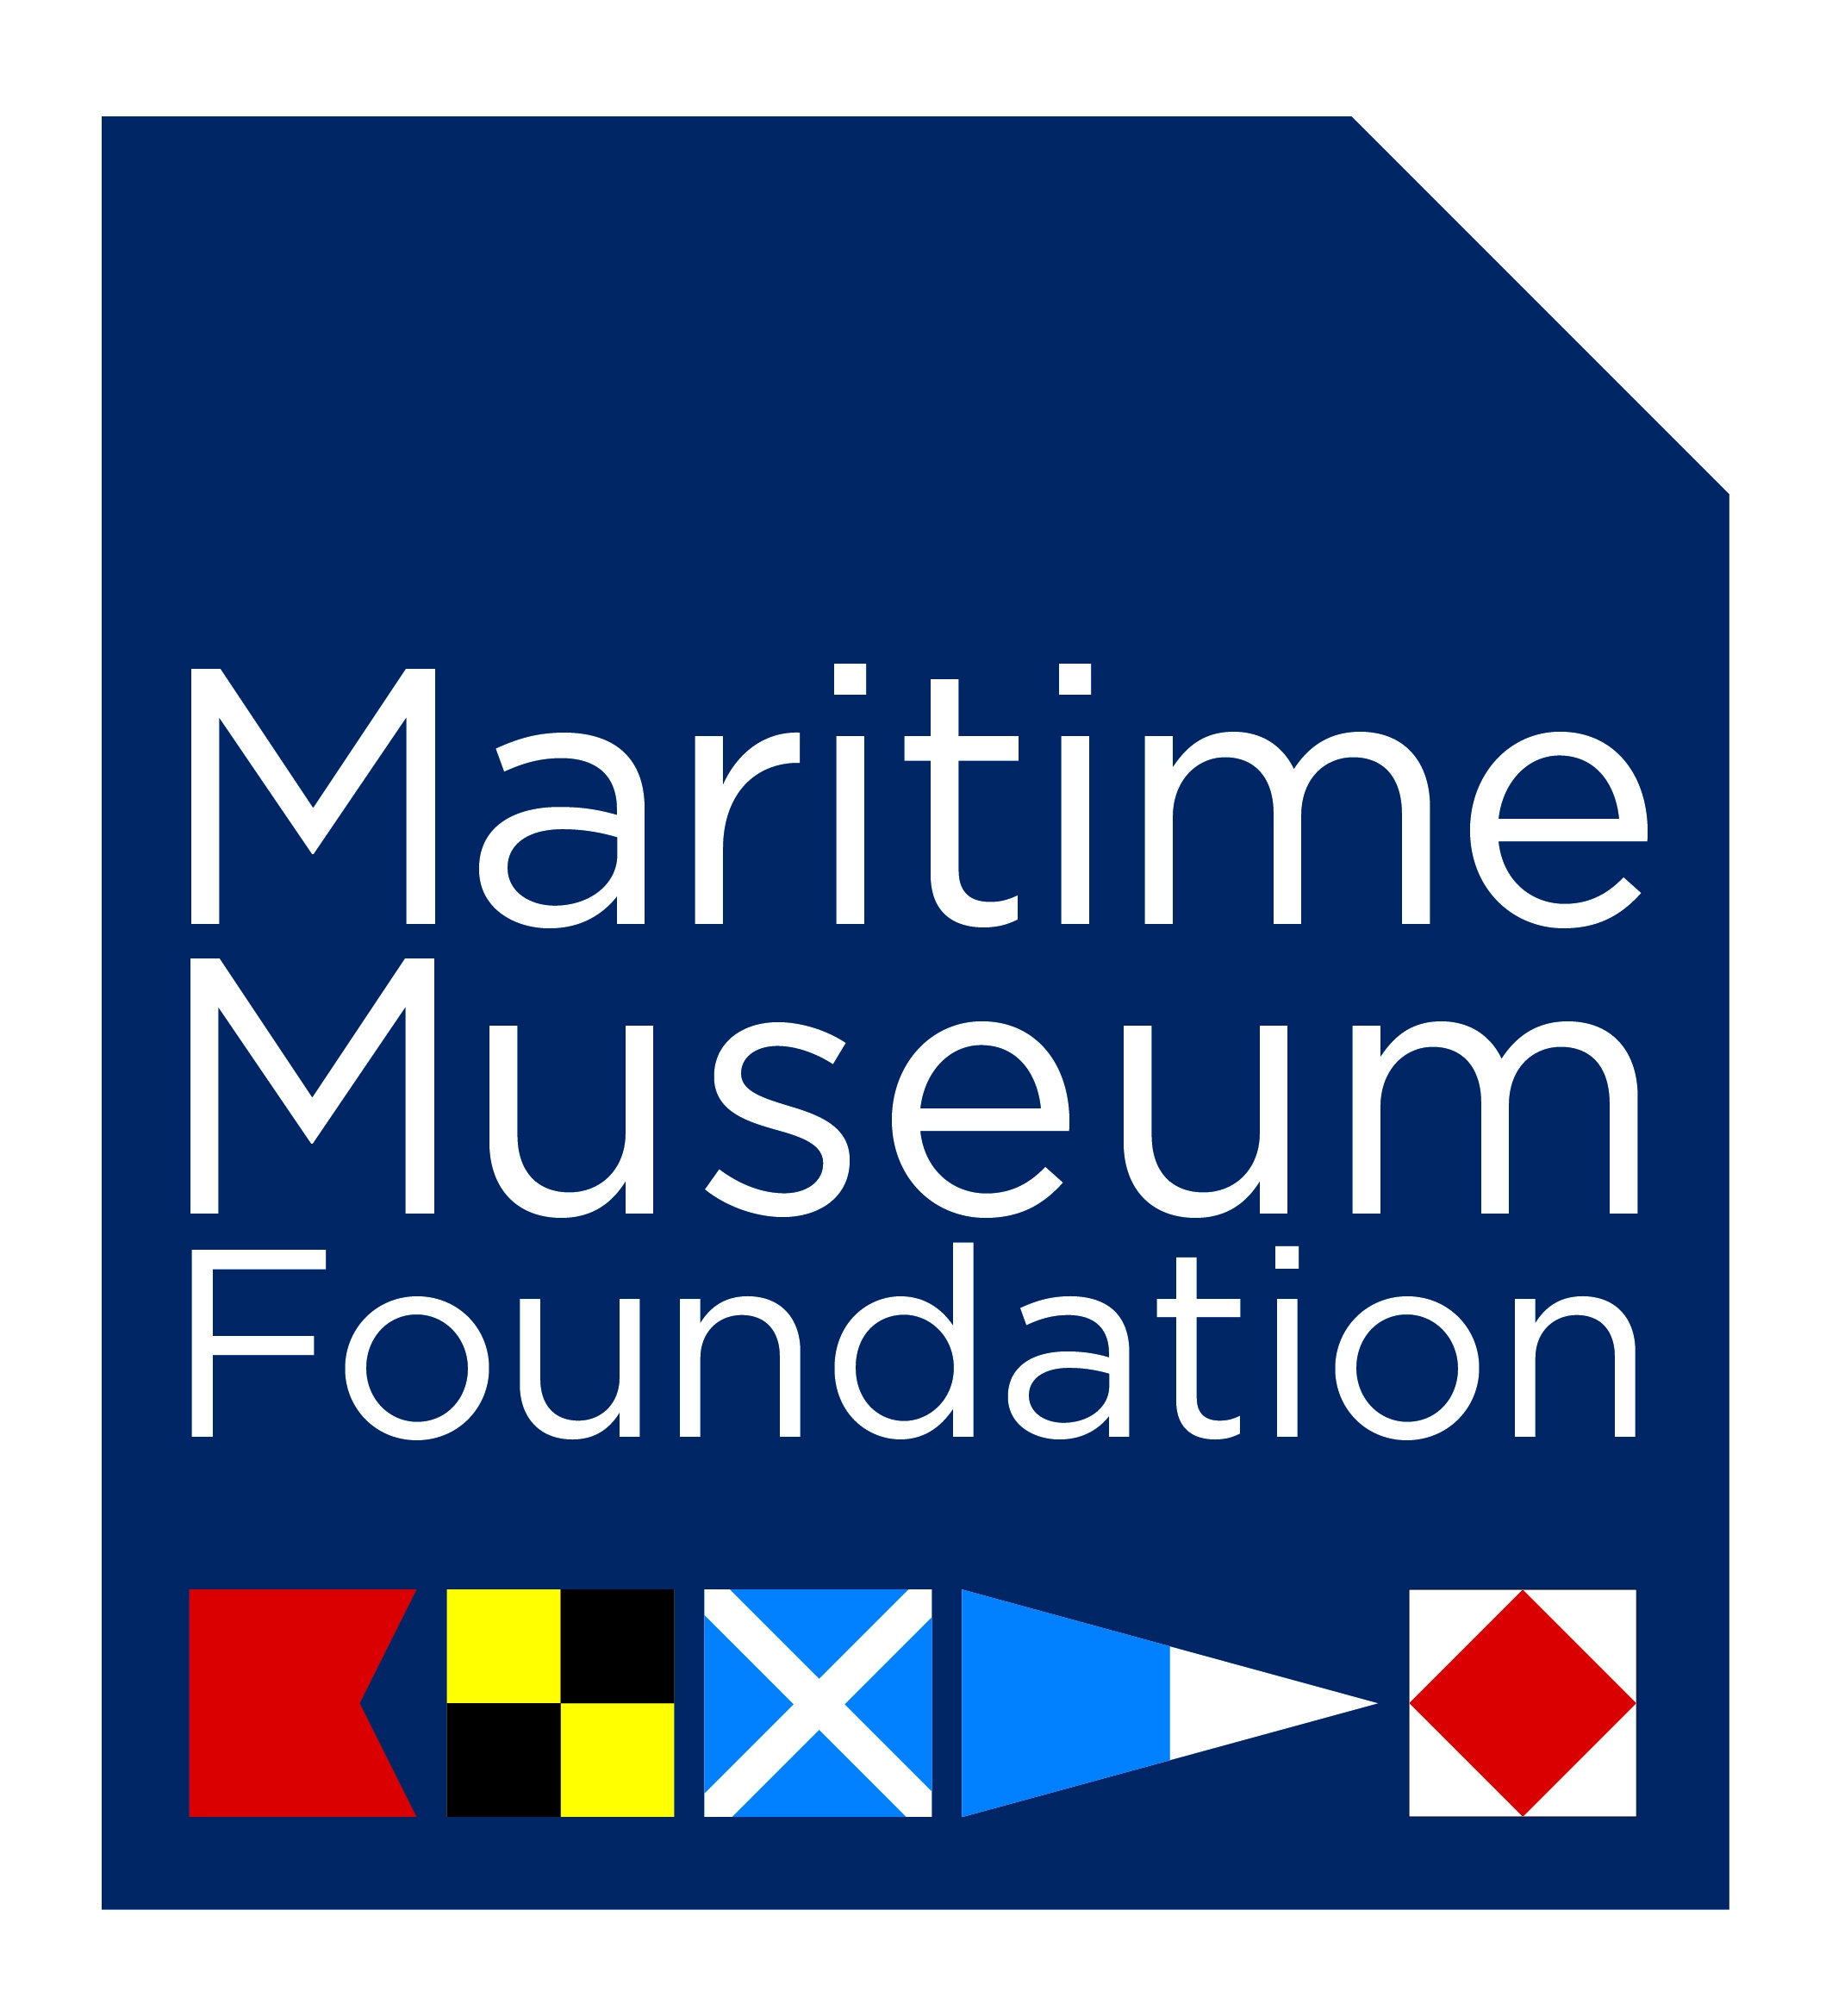 https://cdn.aucklandunlimited.com/maritime/assets/media/maritime-museum-foundation-logo.webp